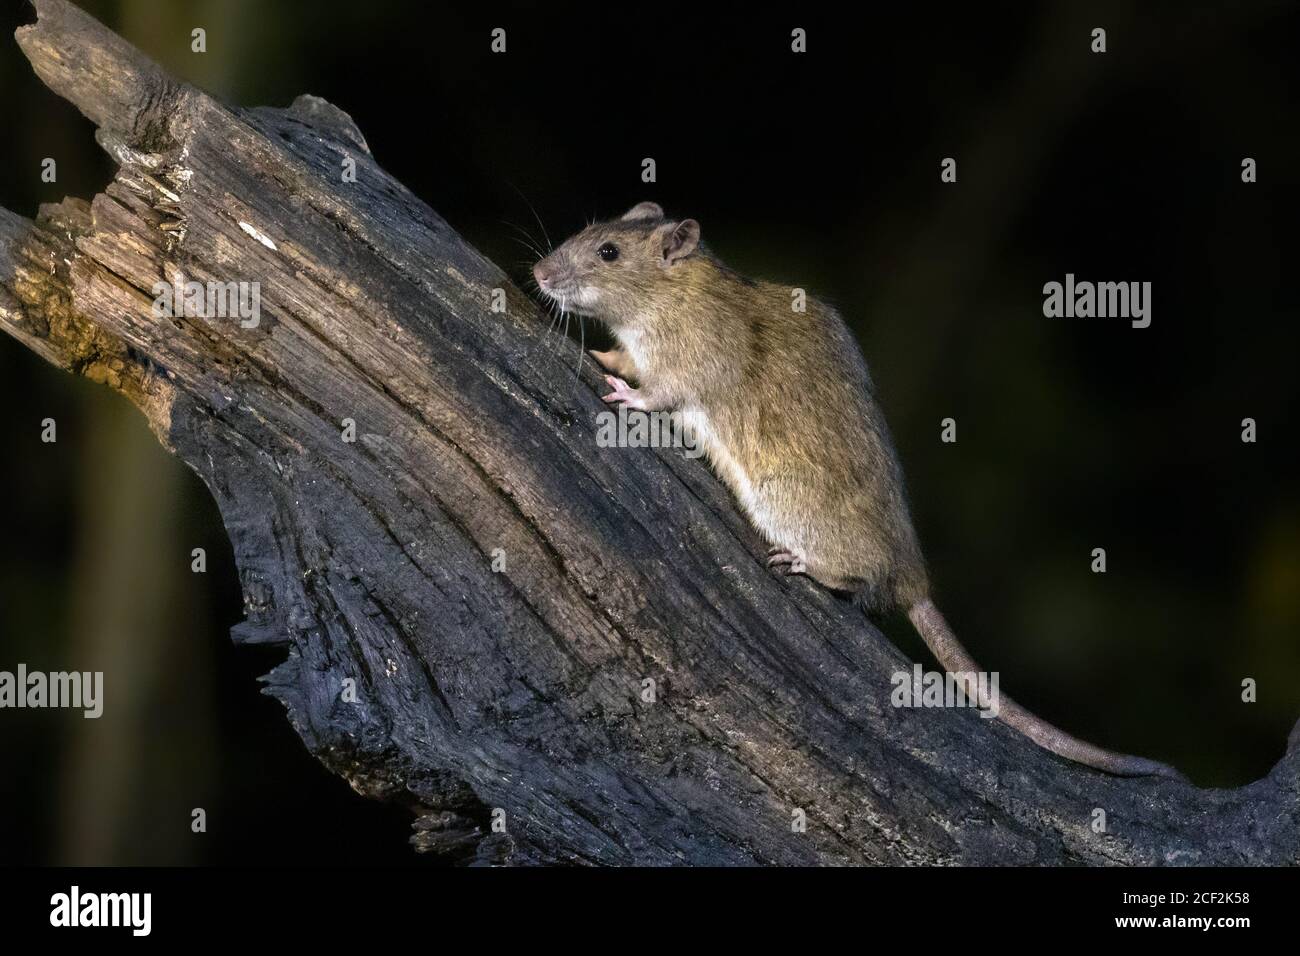 Braune Ratte (Rattus norvegicus) auf einem Stamm bei Nacht in natürlicher Umgebung, Niederlande Stockfoto